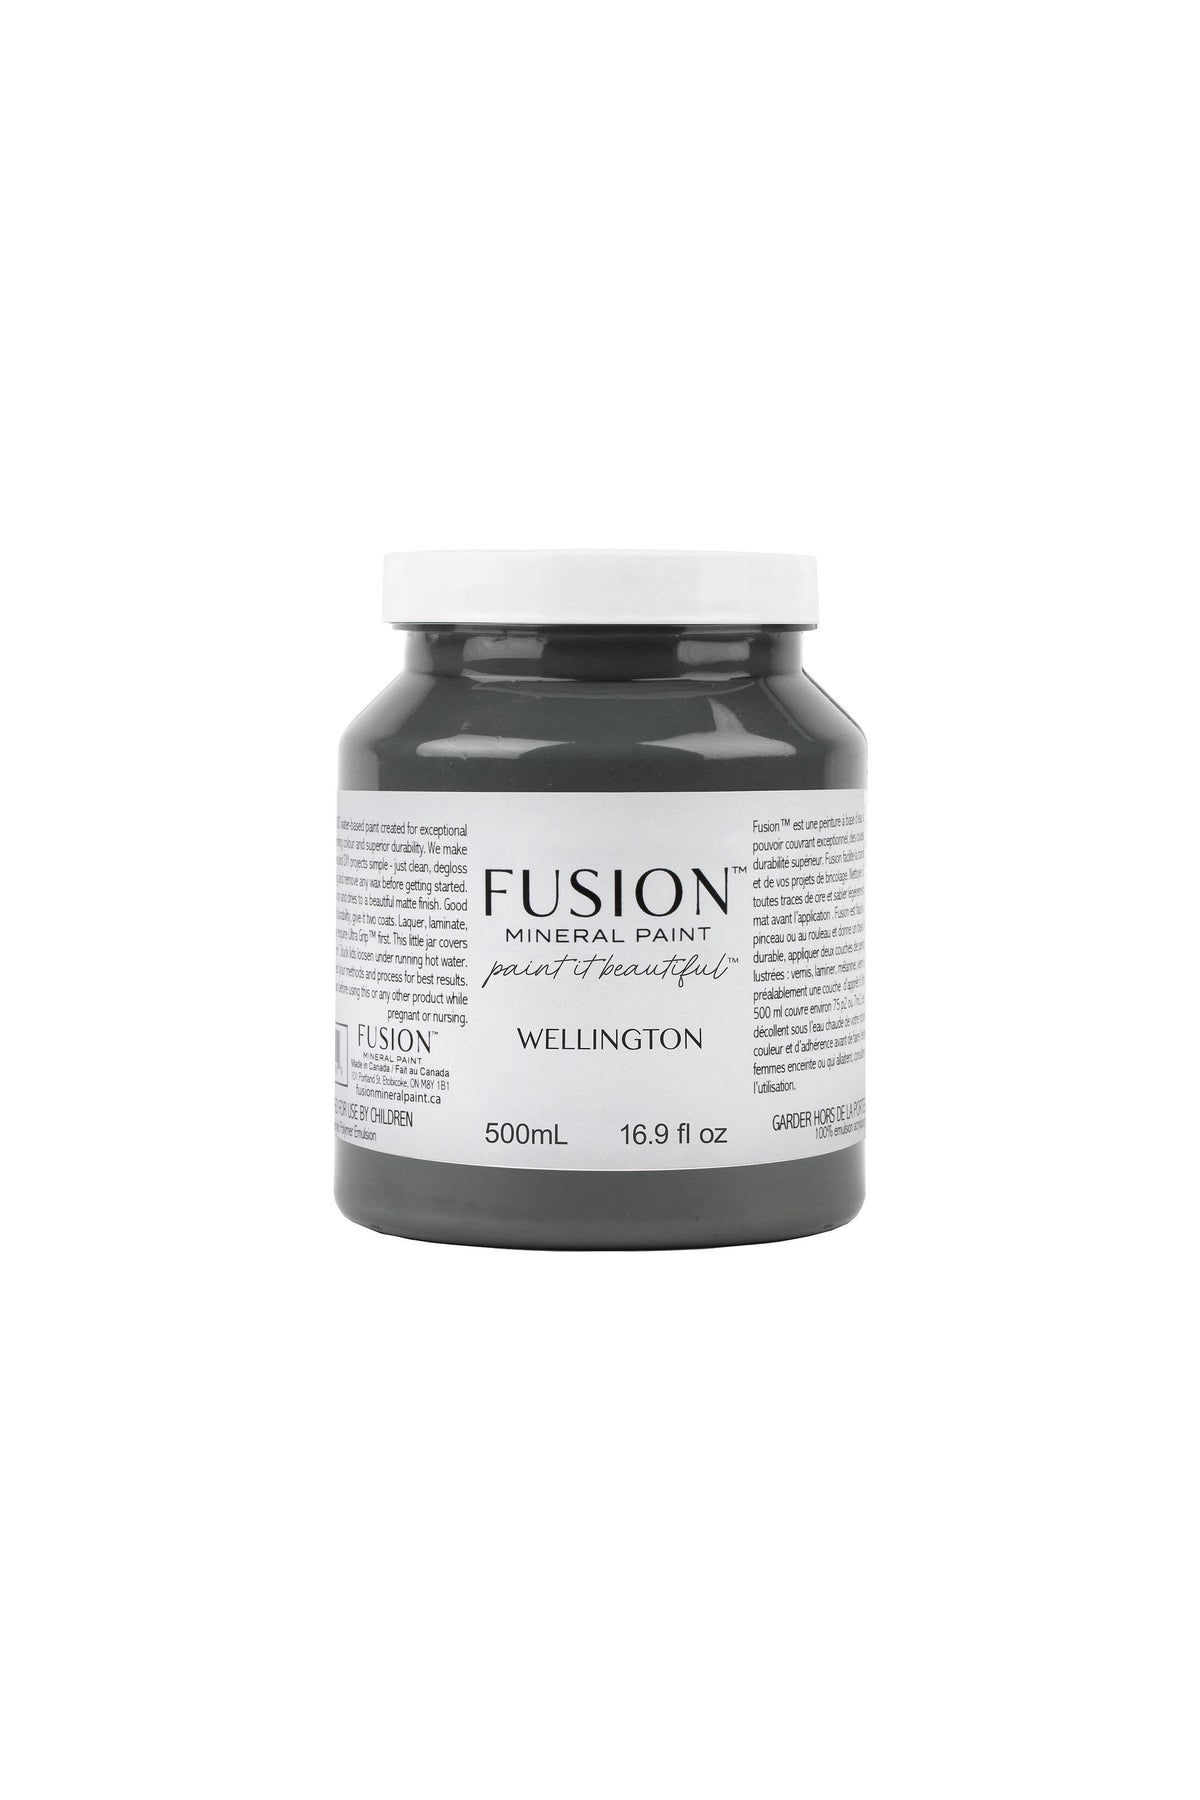 Wellington-Fusion Mineral Paint